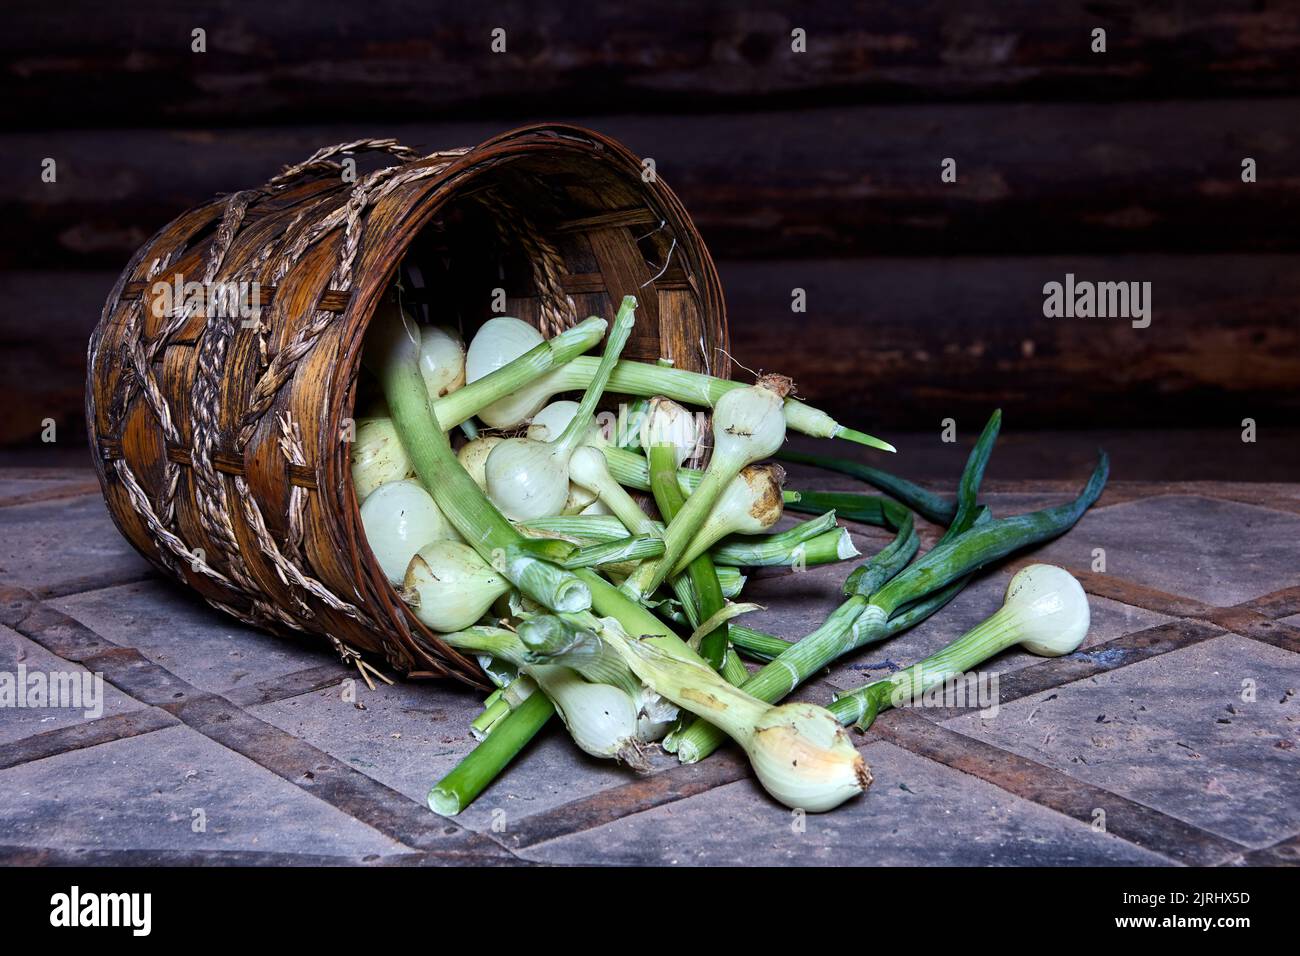 Aus dem Korbkorb wurden grüne Zwiebeln mit Zwiebeln gegossen. Stockfoto